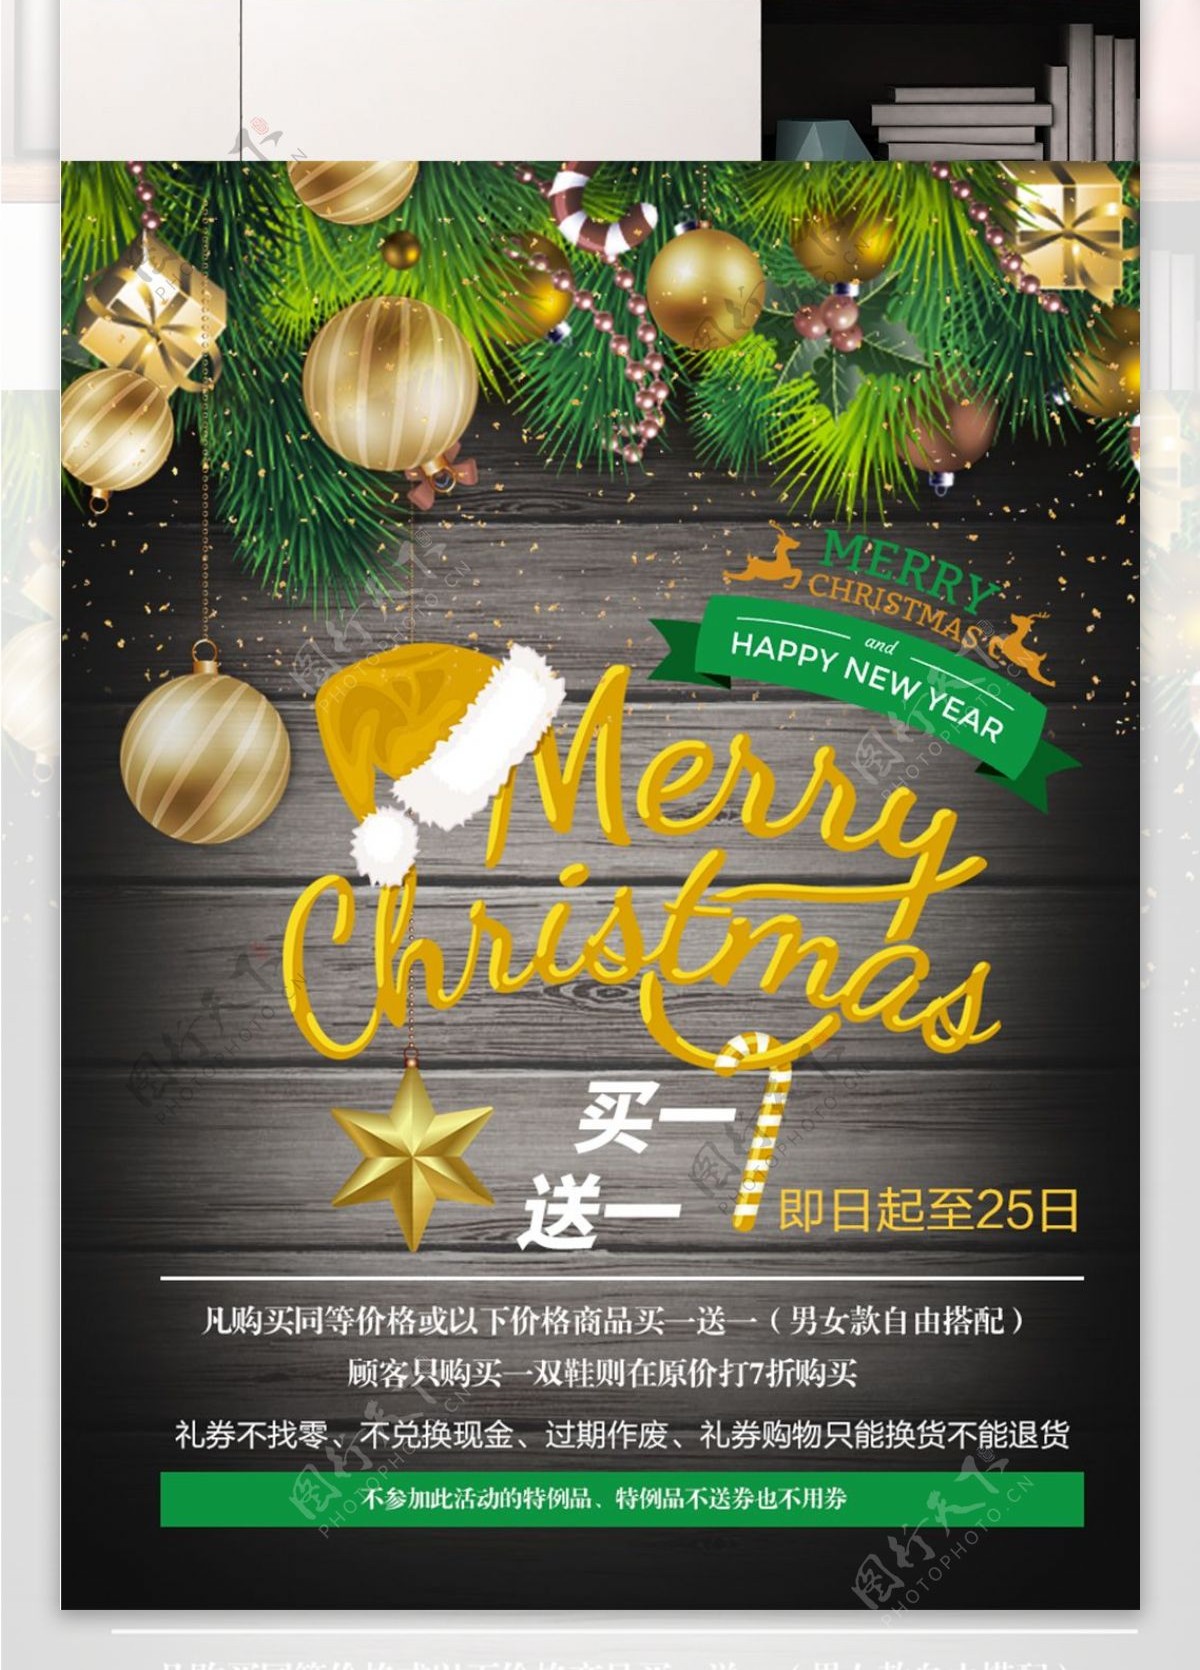 金色绿色圣诞促销海报PSD